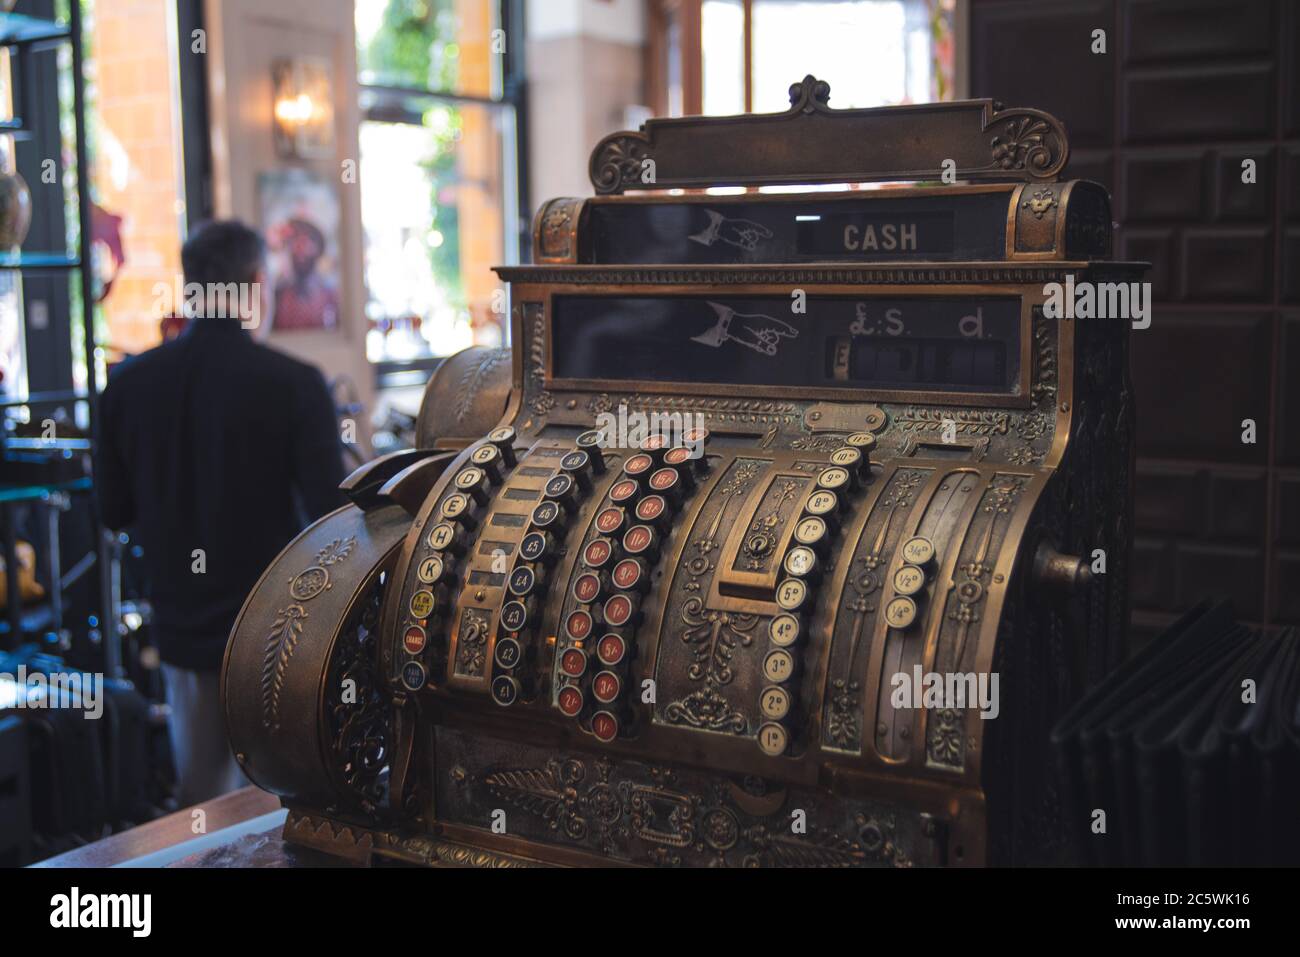 Old vintage cash register in a restaurant Stock Photo